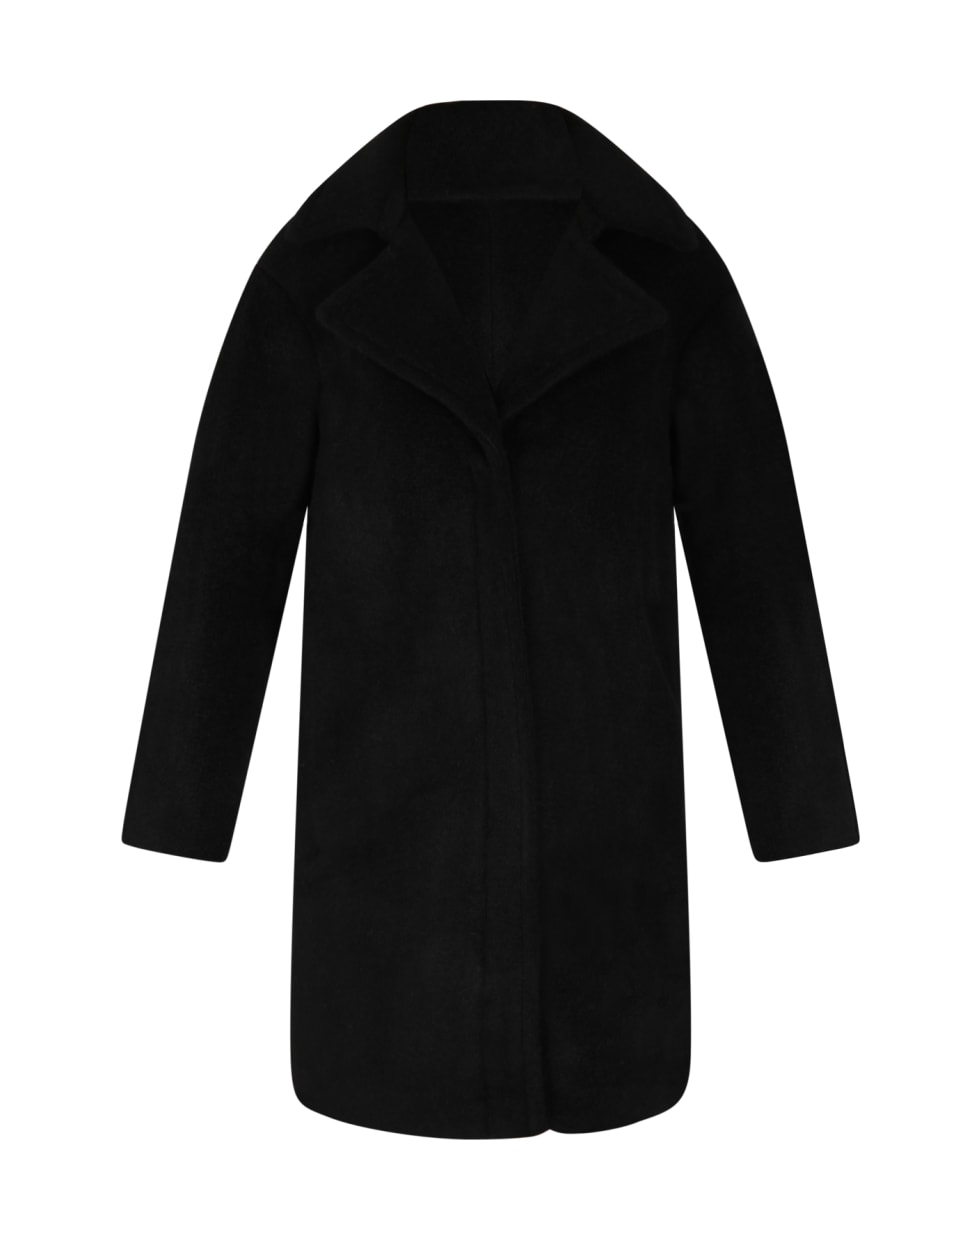 Armani Collezioni Black Coat For Kids - Black